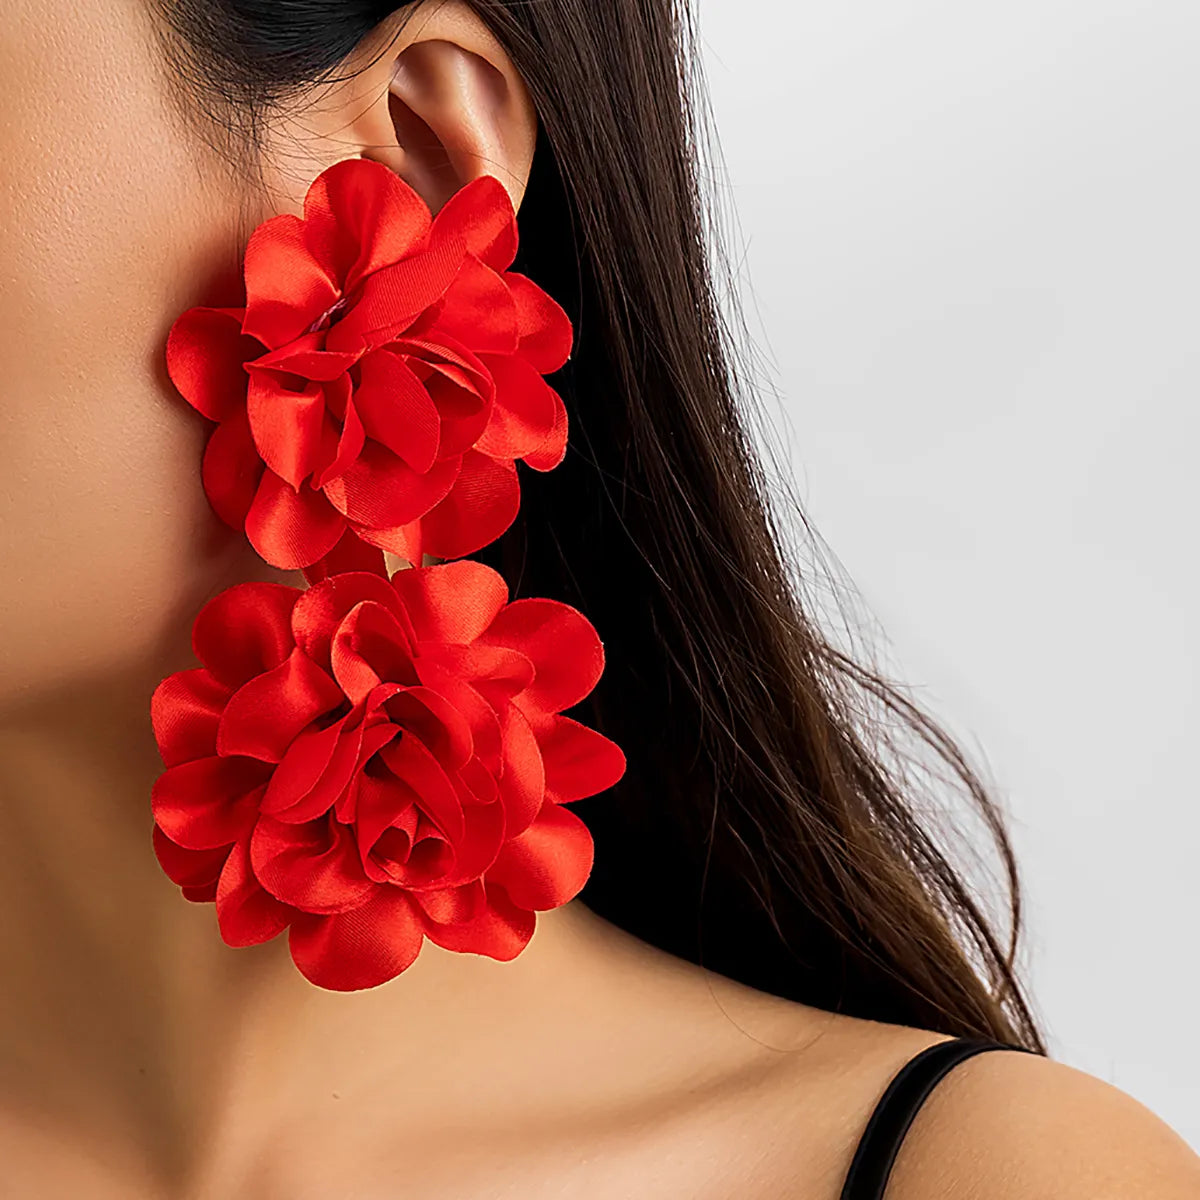 TEEK - Large Double Flower Earrings JEWELRY theteekdotcom   